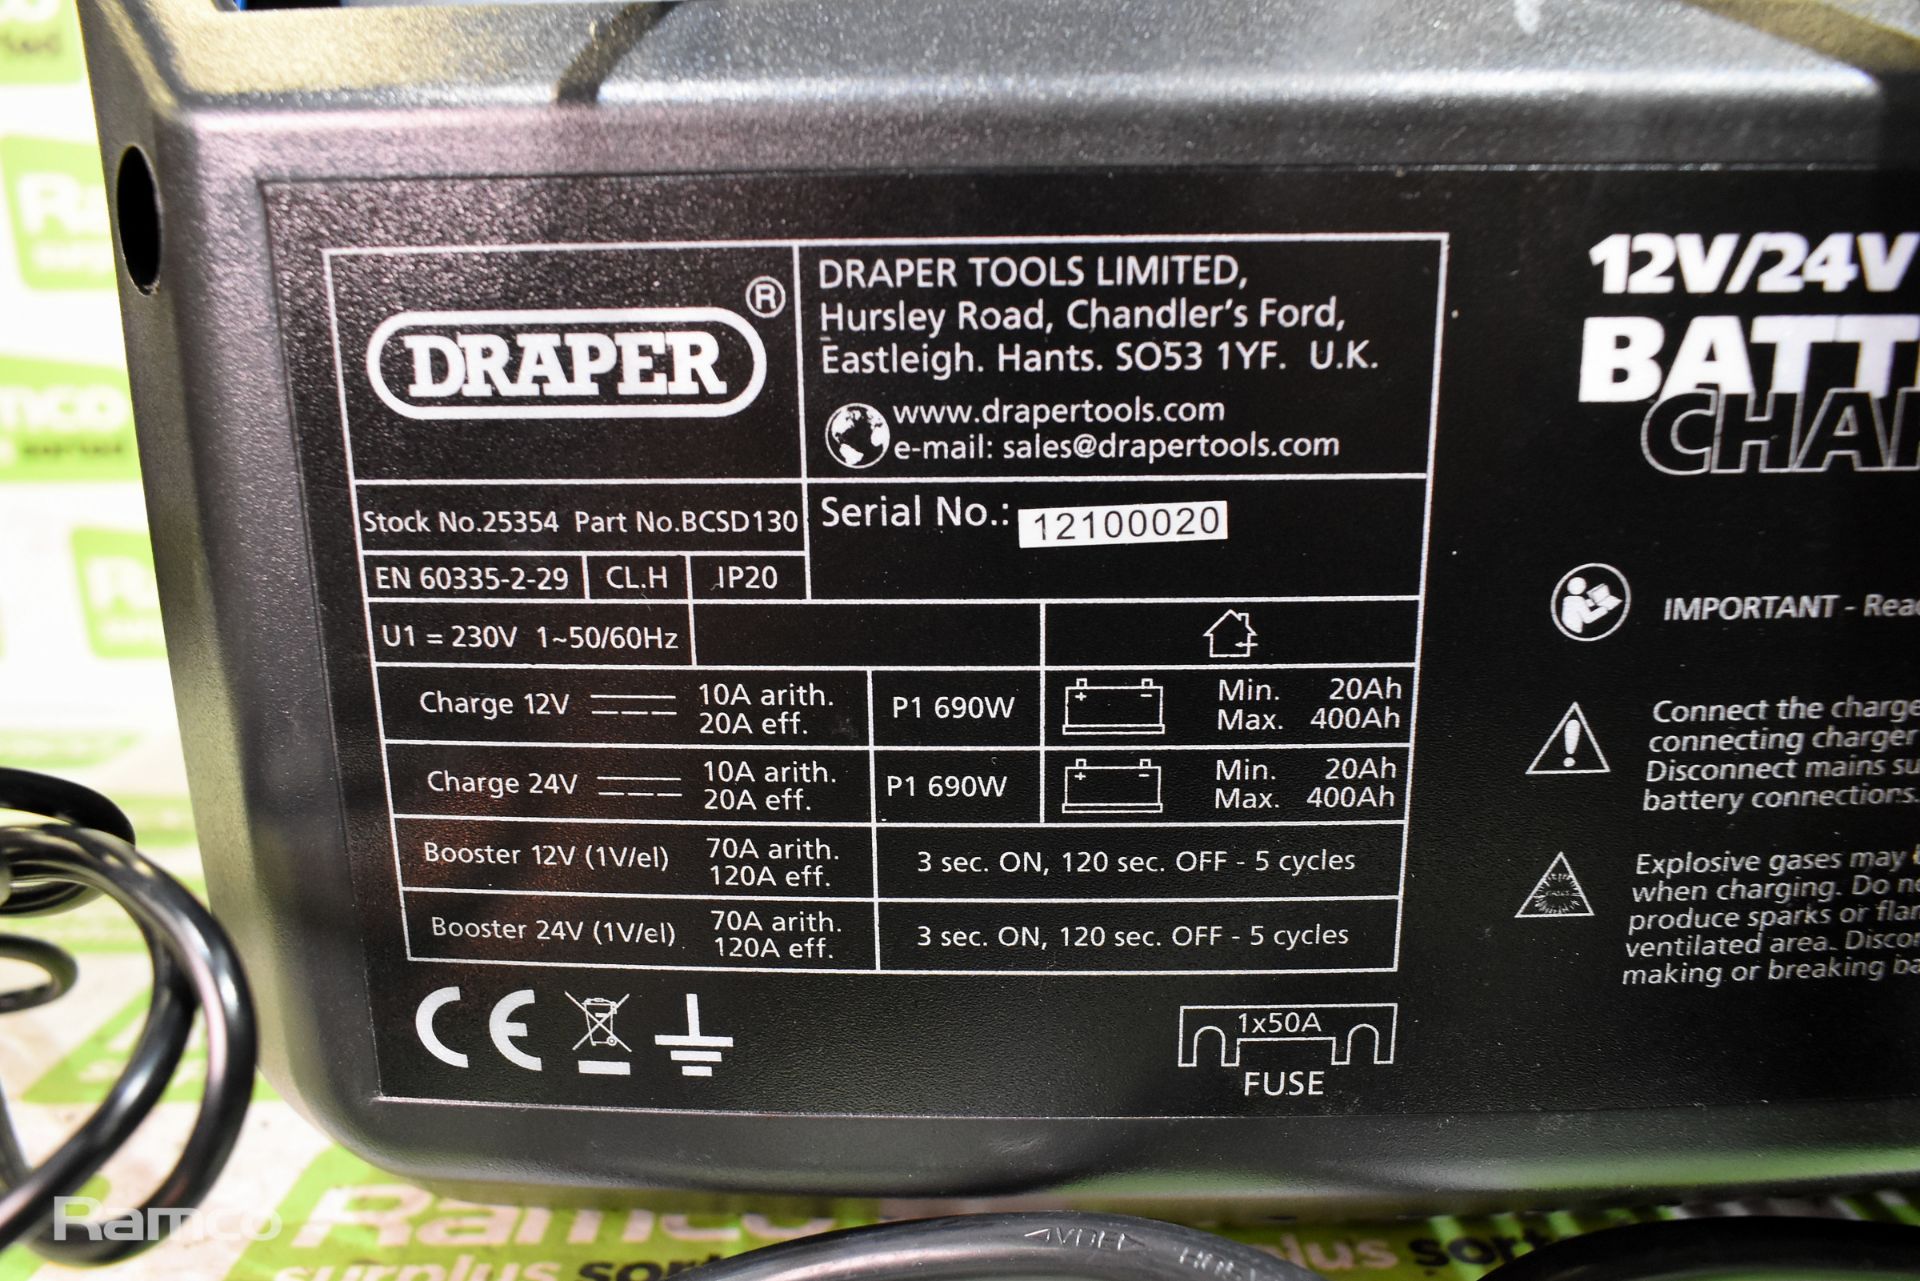 Draper 25354 battery charger/starter 12 / 24V - 240V input - Image 3 of 10